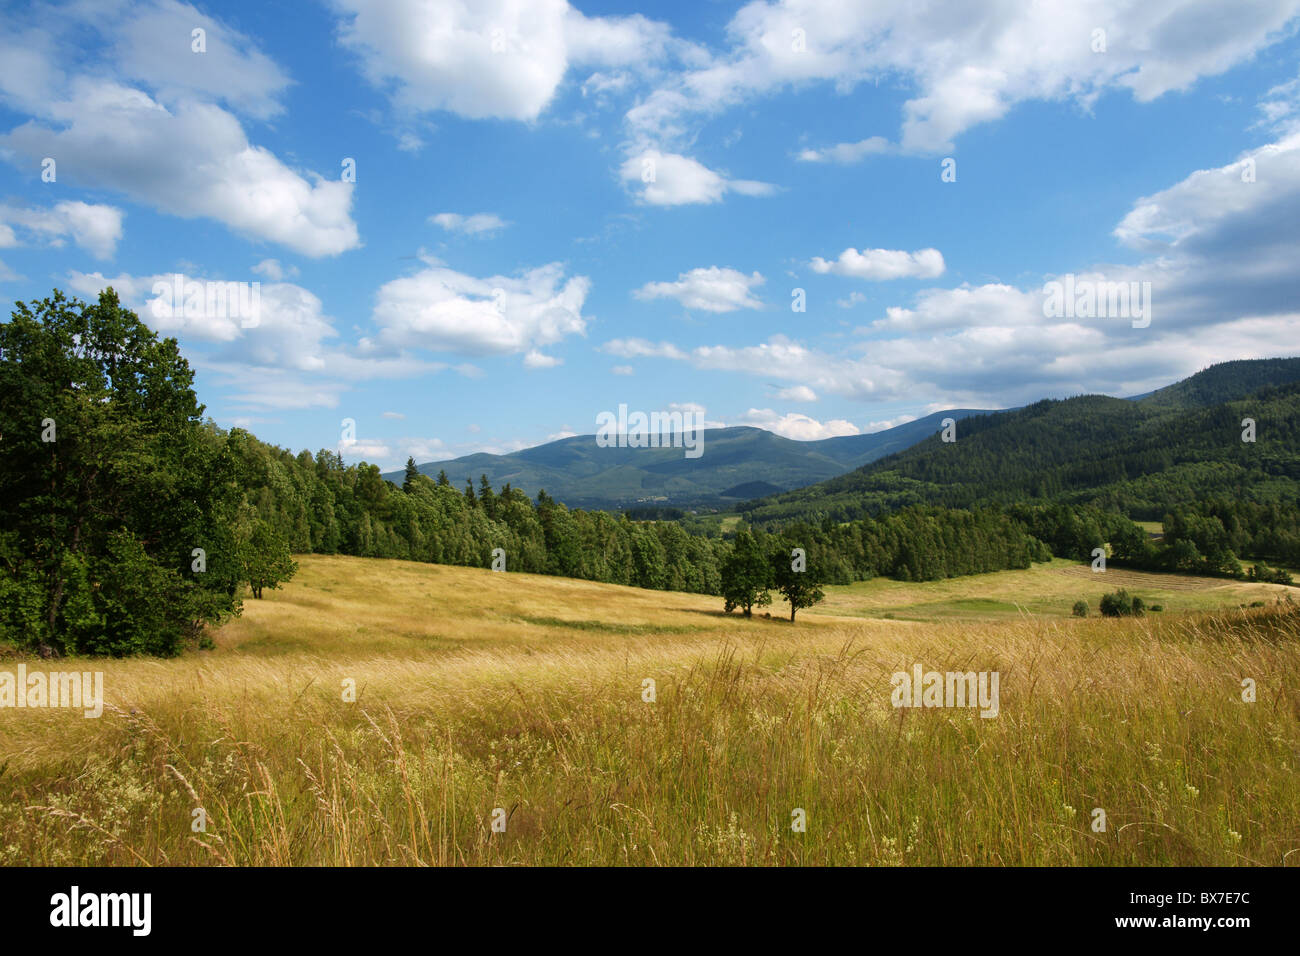 Polnische Landschaft - gelb eingereicht, den blauen Himmel und weiße Wolken Stockfoto